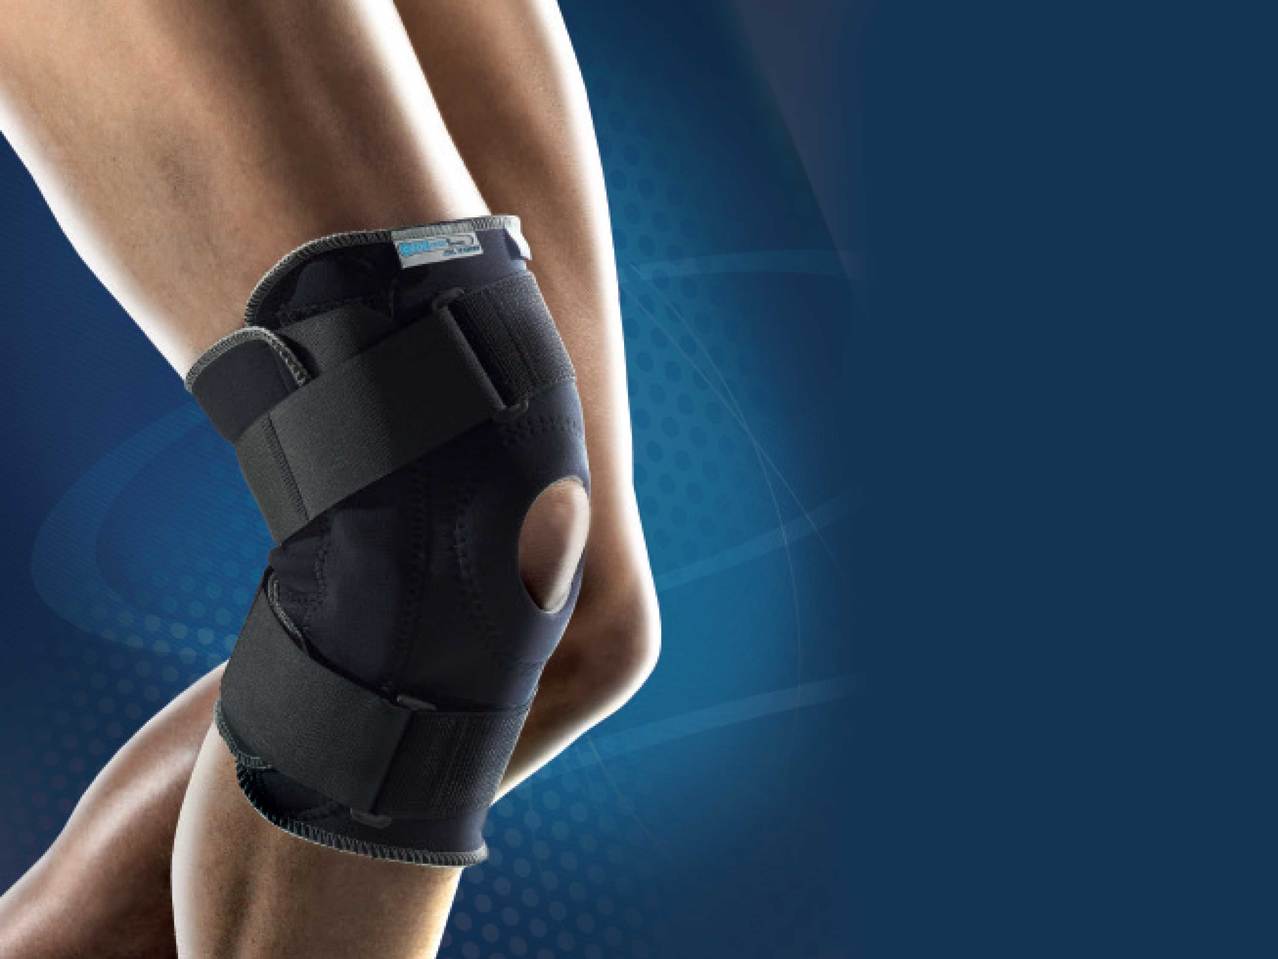 SENSIPLAST Pro Comfort Knee Brace